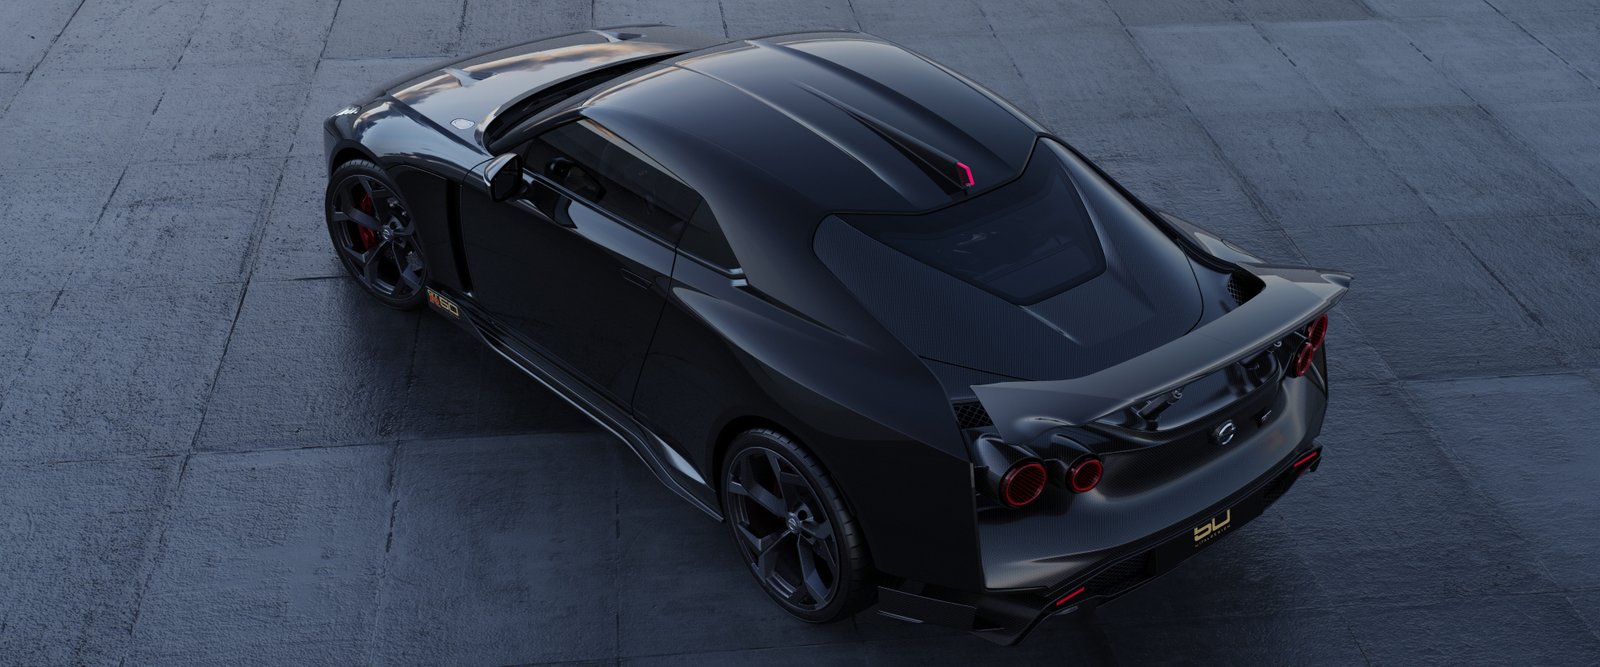 Nissan GT-R50 by Italdesign production rendering Black RR TOP.jpg